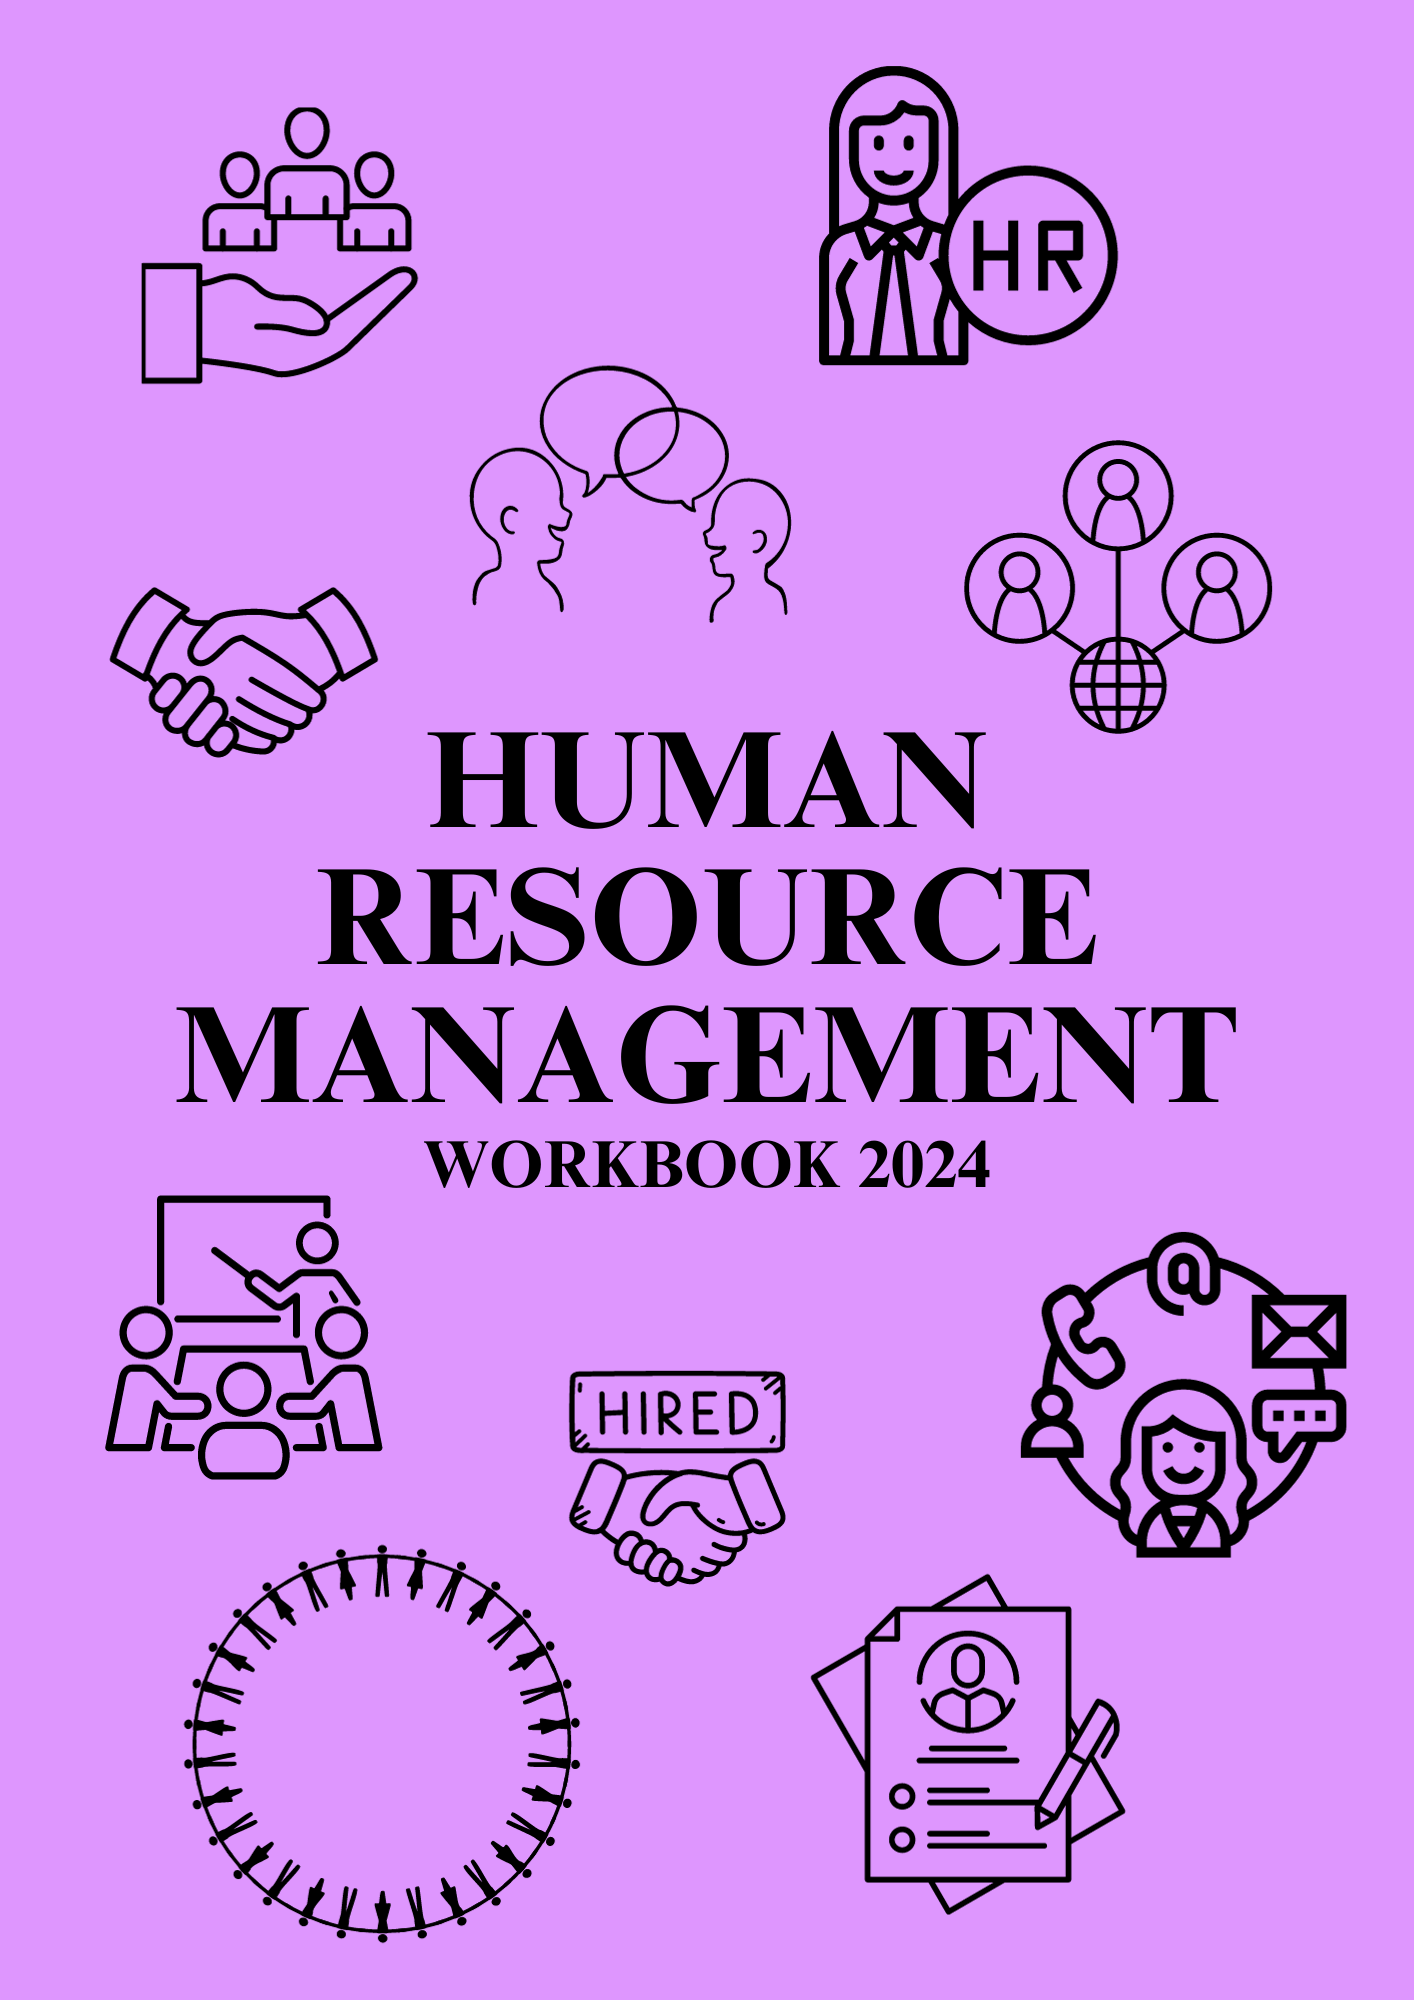 Human Resource Management Workbook